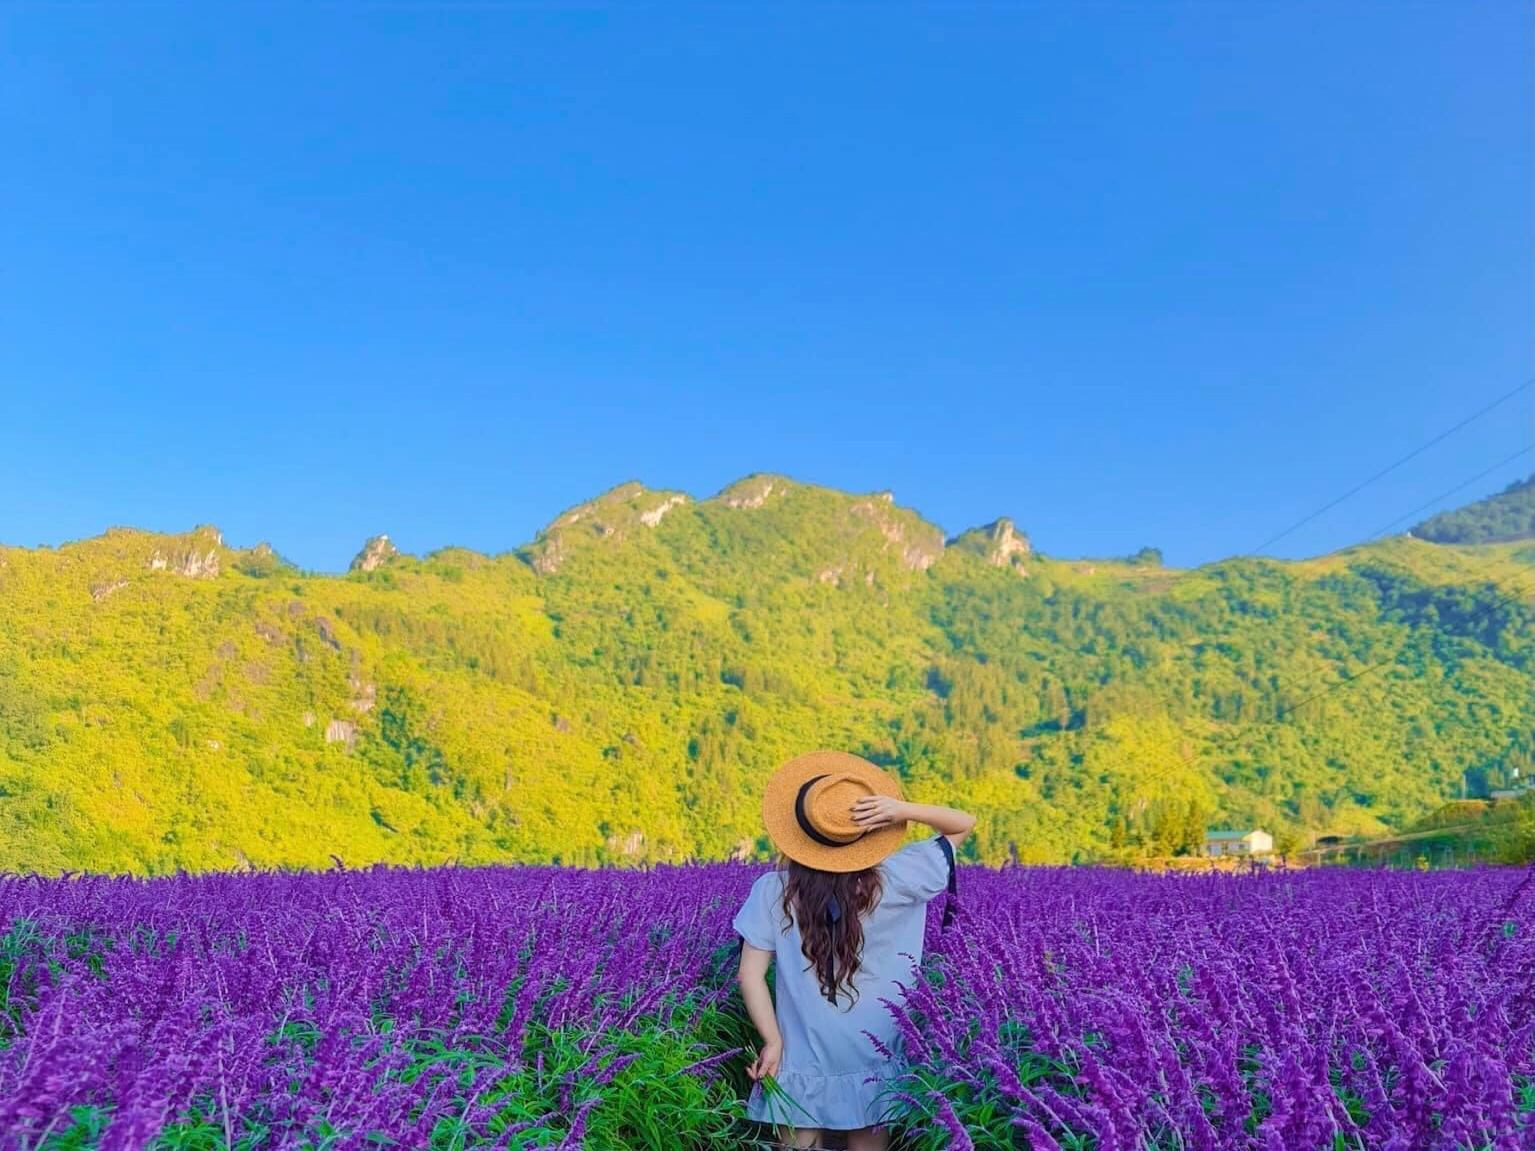 Vườn hoa Lavender - Khám phá vườn hoa lavender với lối đi đầy sức sống và những mảng hoa tím thơ mộng. Khung cảnh đẹp như tranh cùng với hương thơm nồng nàn của hoa oải hương sẽ khiến bạn cảm thấy thật sự hài lòng.